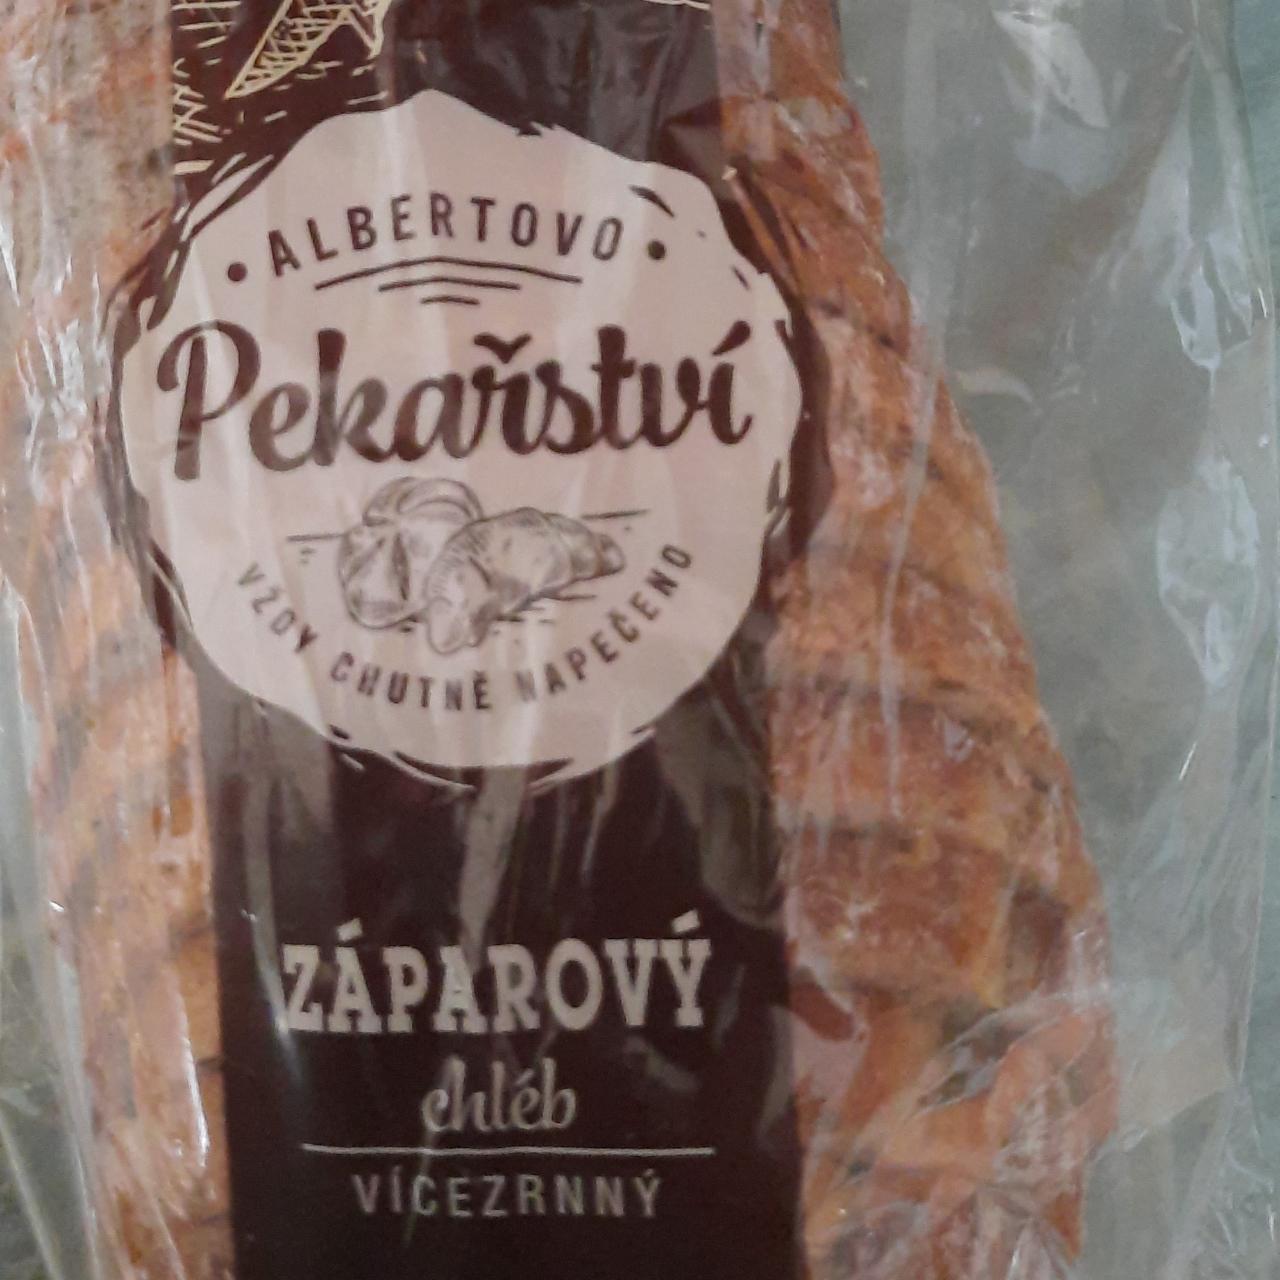 Fotografie - Záparový chléb vícezrnný Albertovo pekařství